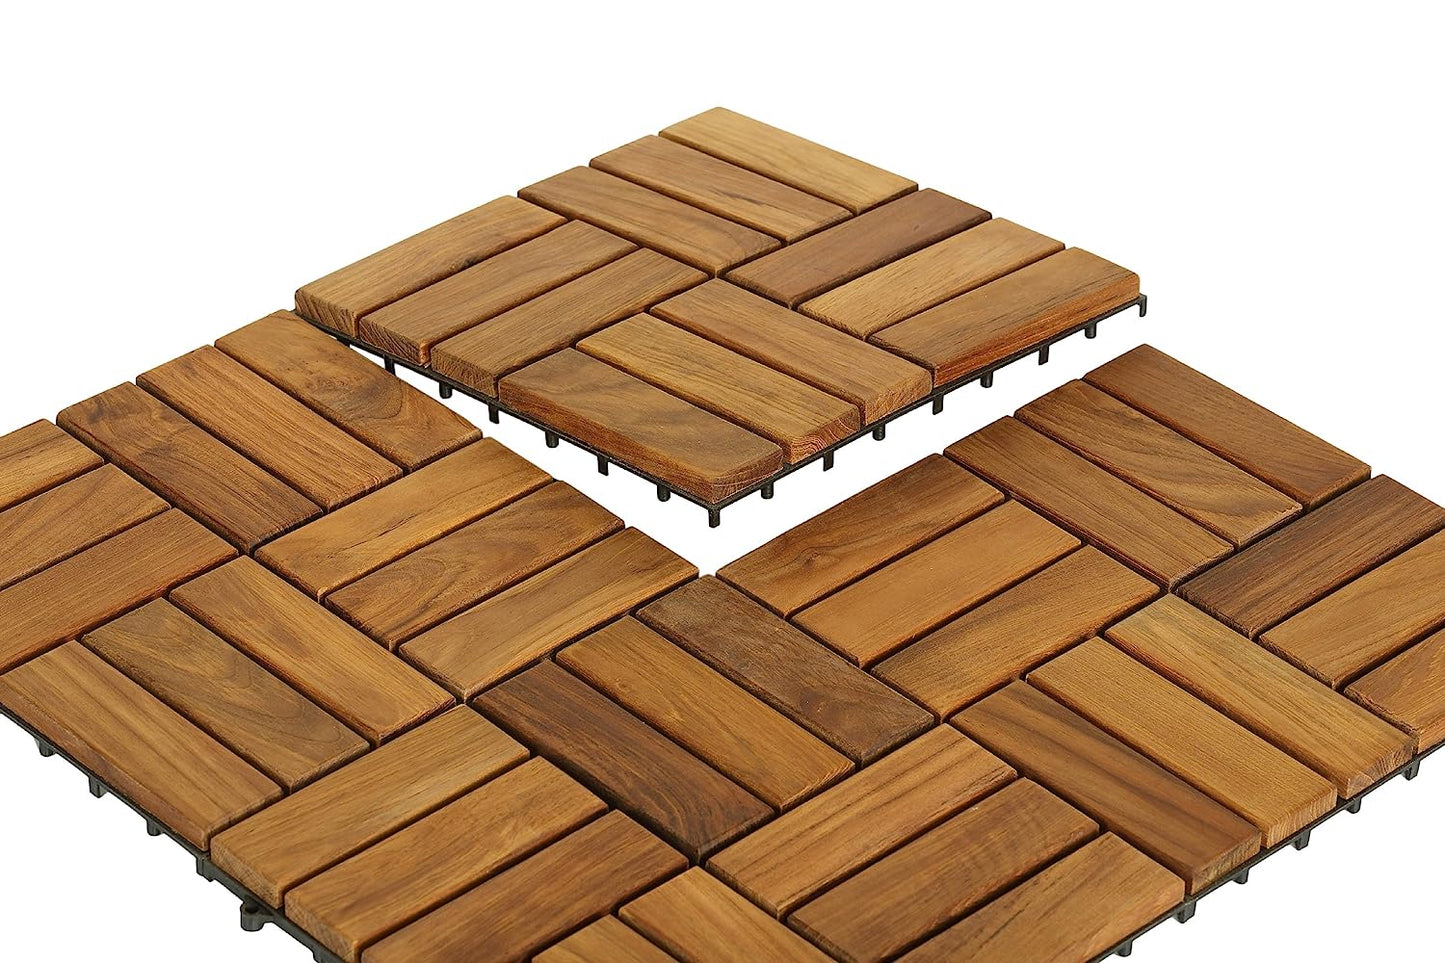 BARE-WF2009 Solid Teak Wood Interlocking Flooring Tiles (Pack of 10), 12" x 12", Brown